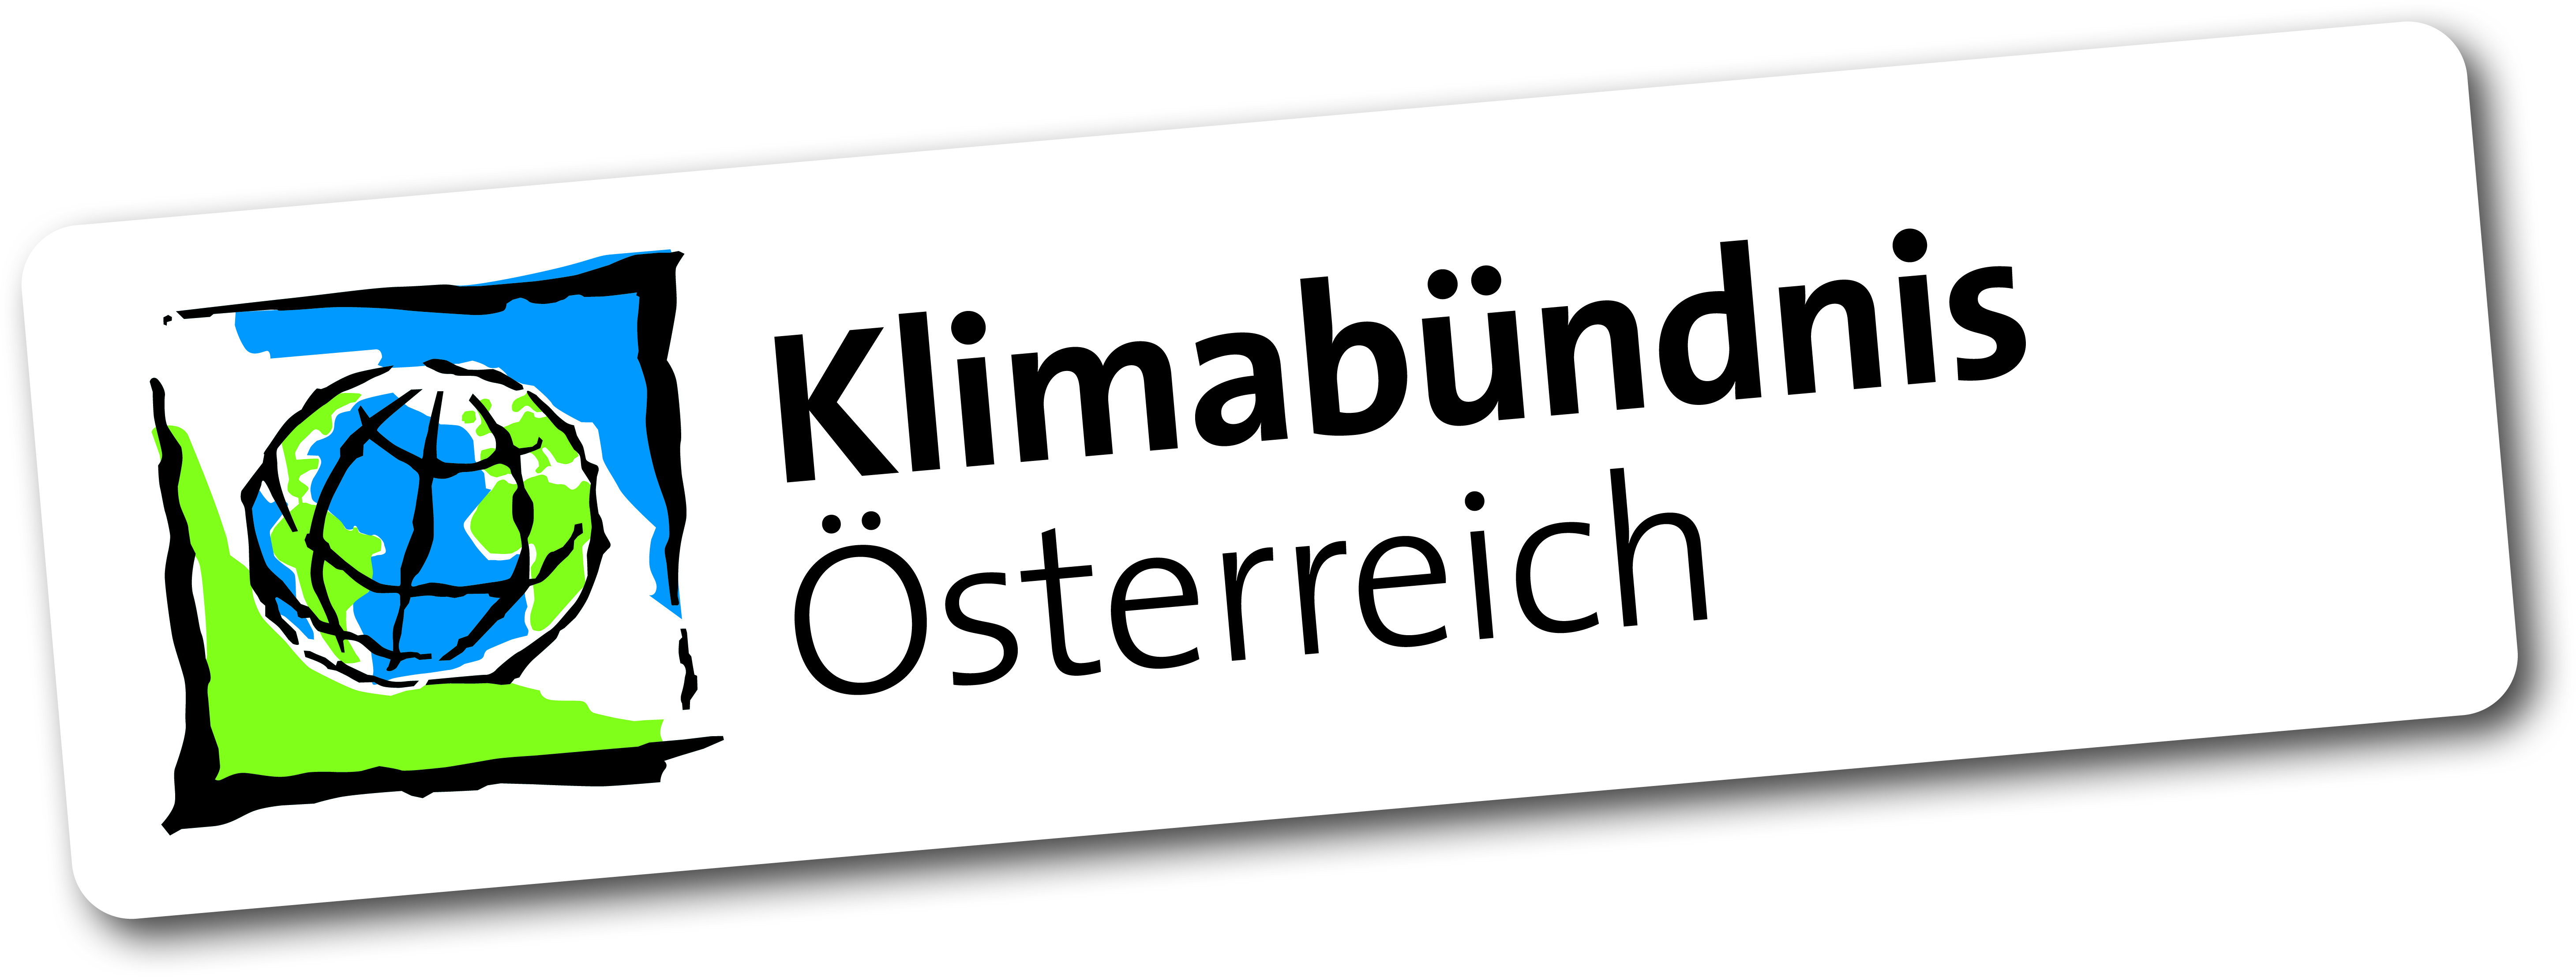 kbu logo oesterreich.jpg